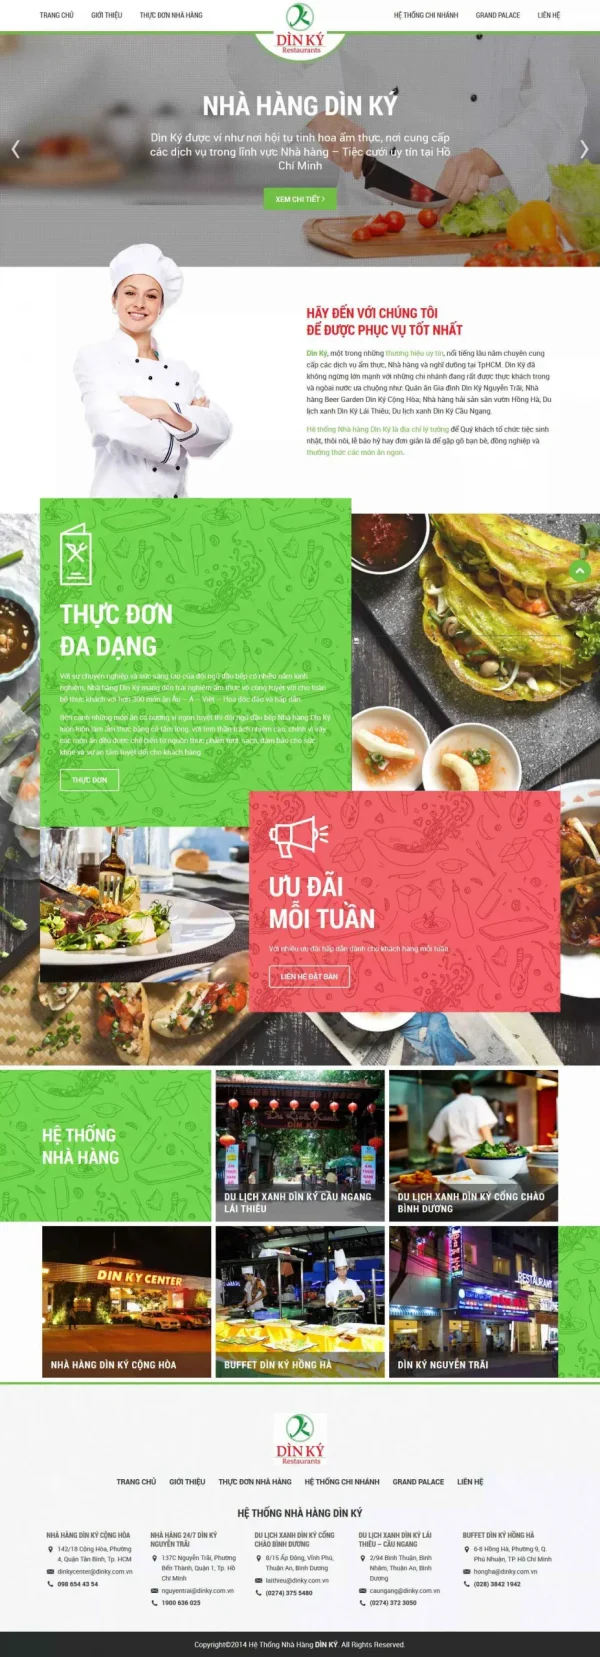 Mẫu giao diện website nhà hàng ẩm thực Dìn Ký